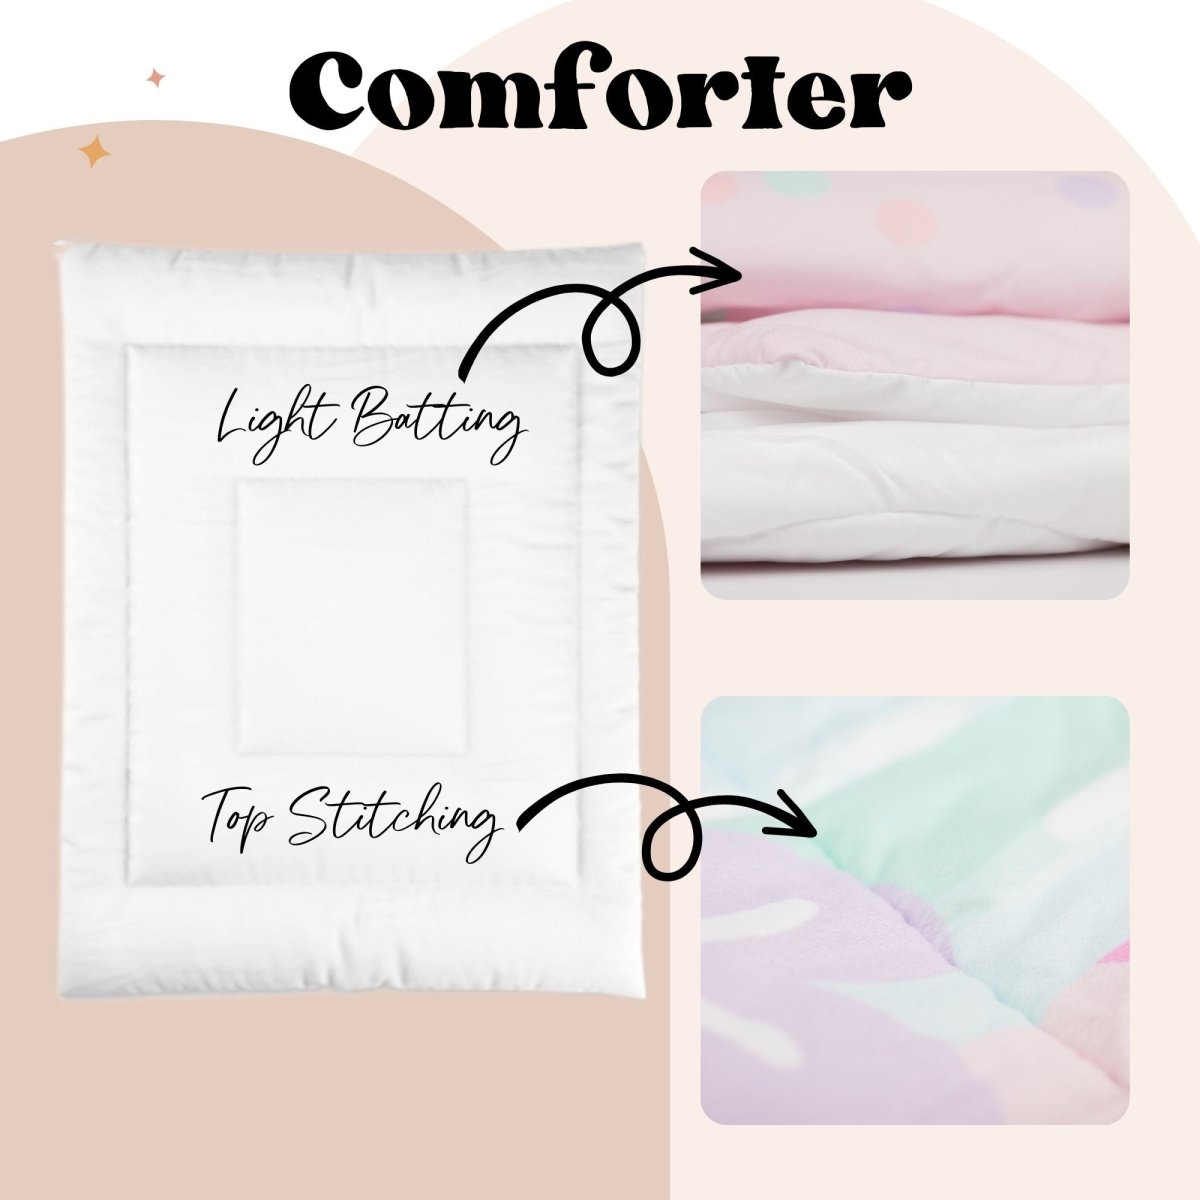 Happy Camper Personalized Kids Bedding Set (Comforter or Duvet Cover) - gender_boy, Happy Camper, text